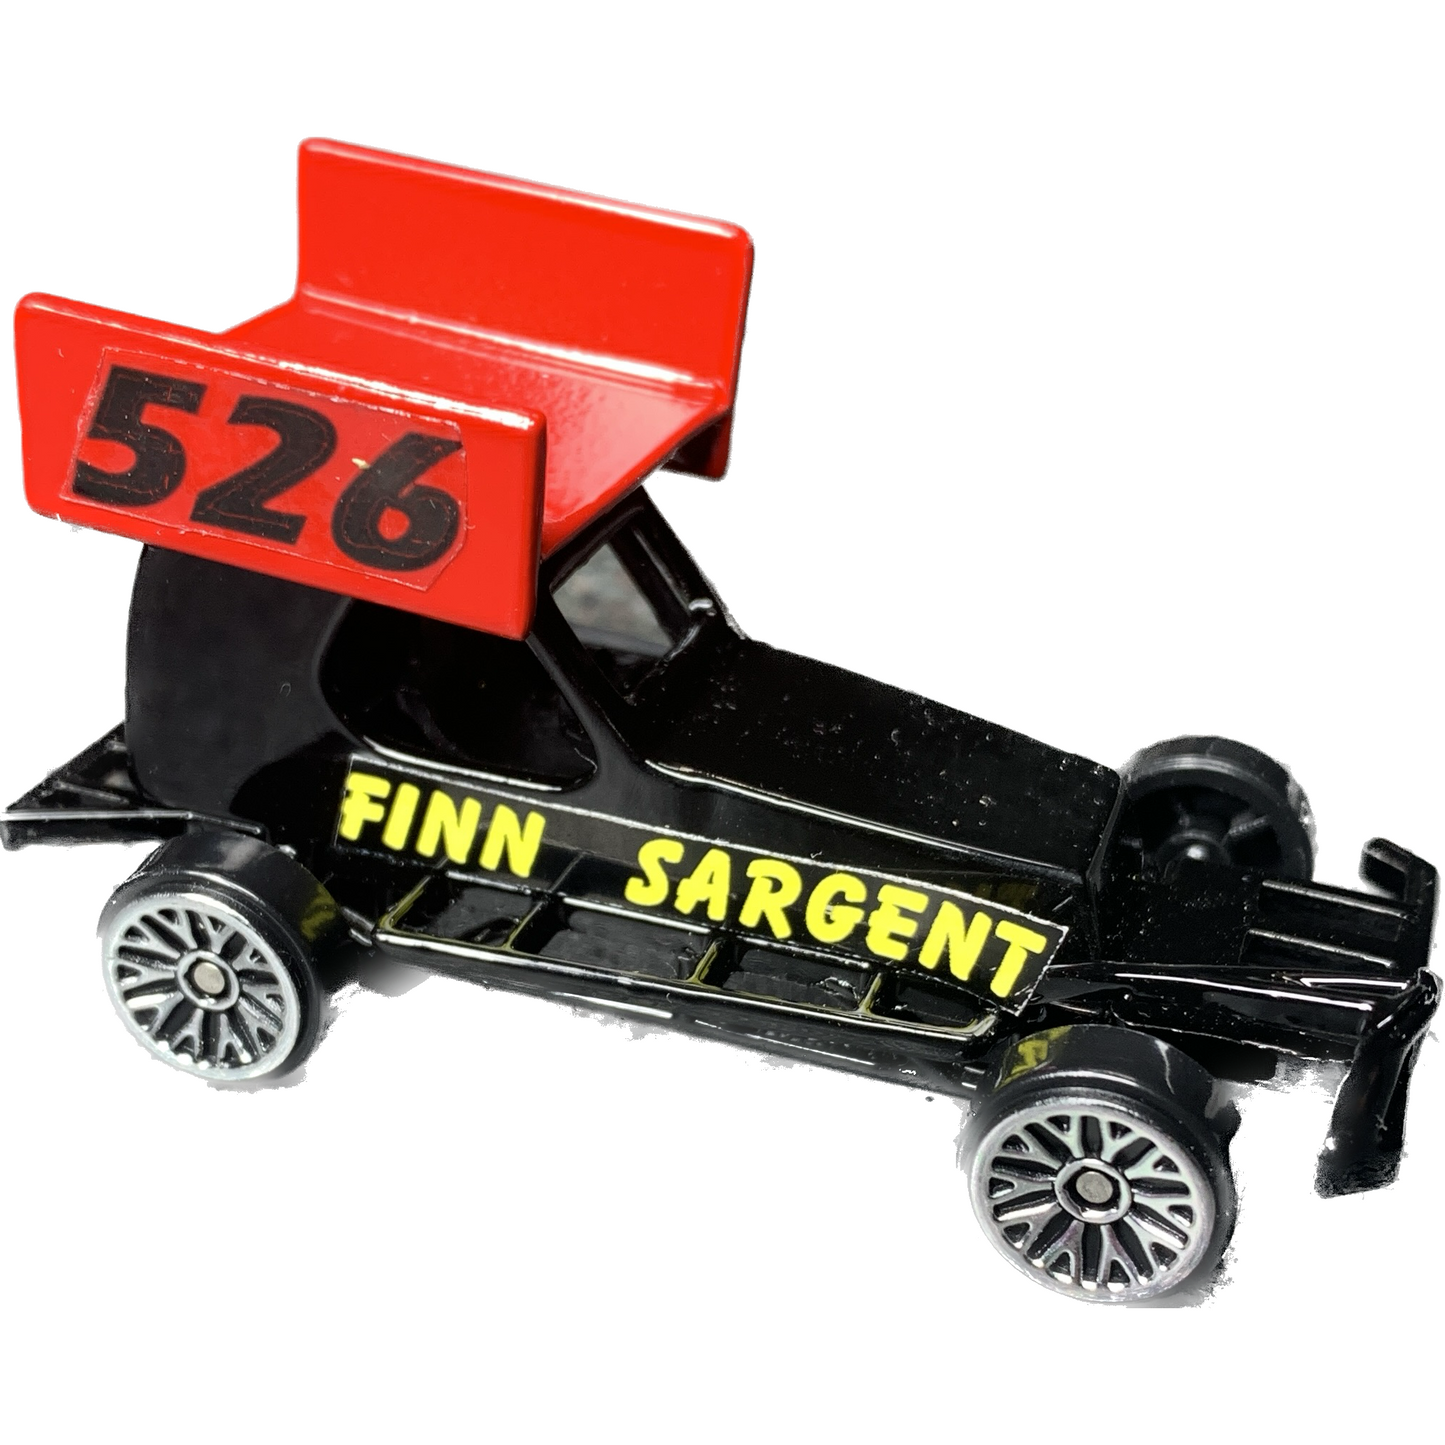 #526 Finn Sargent